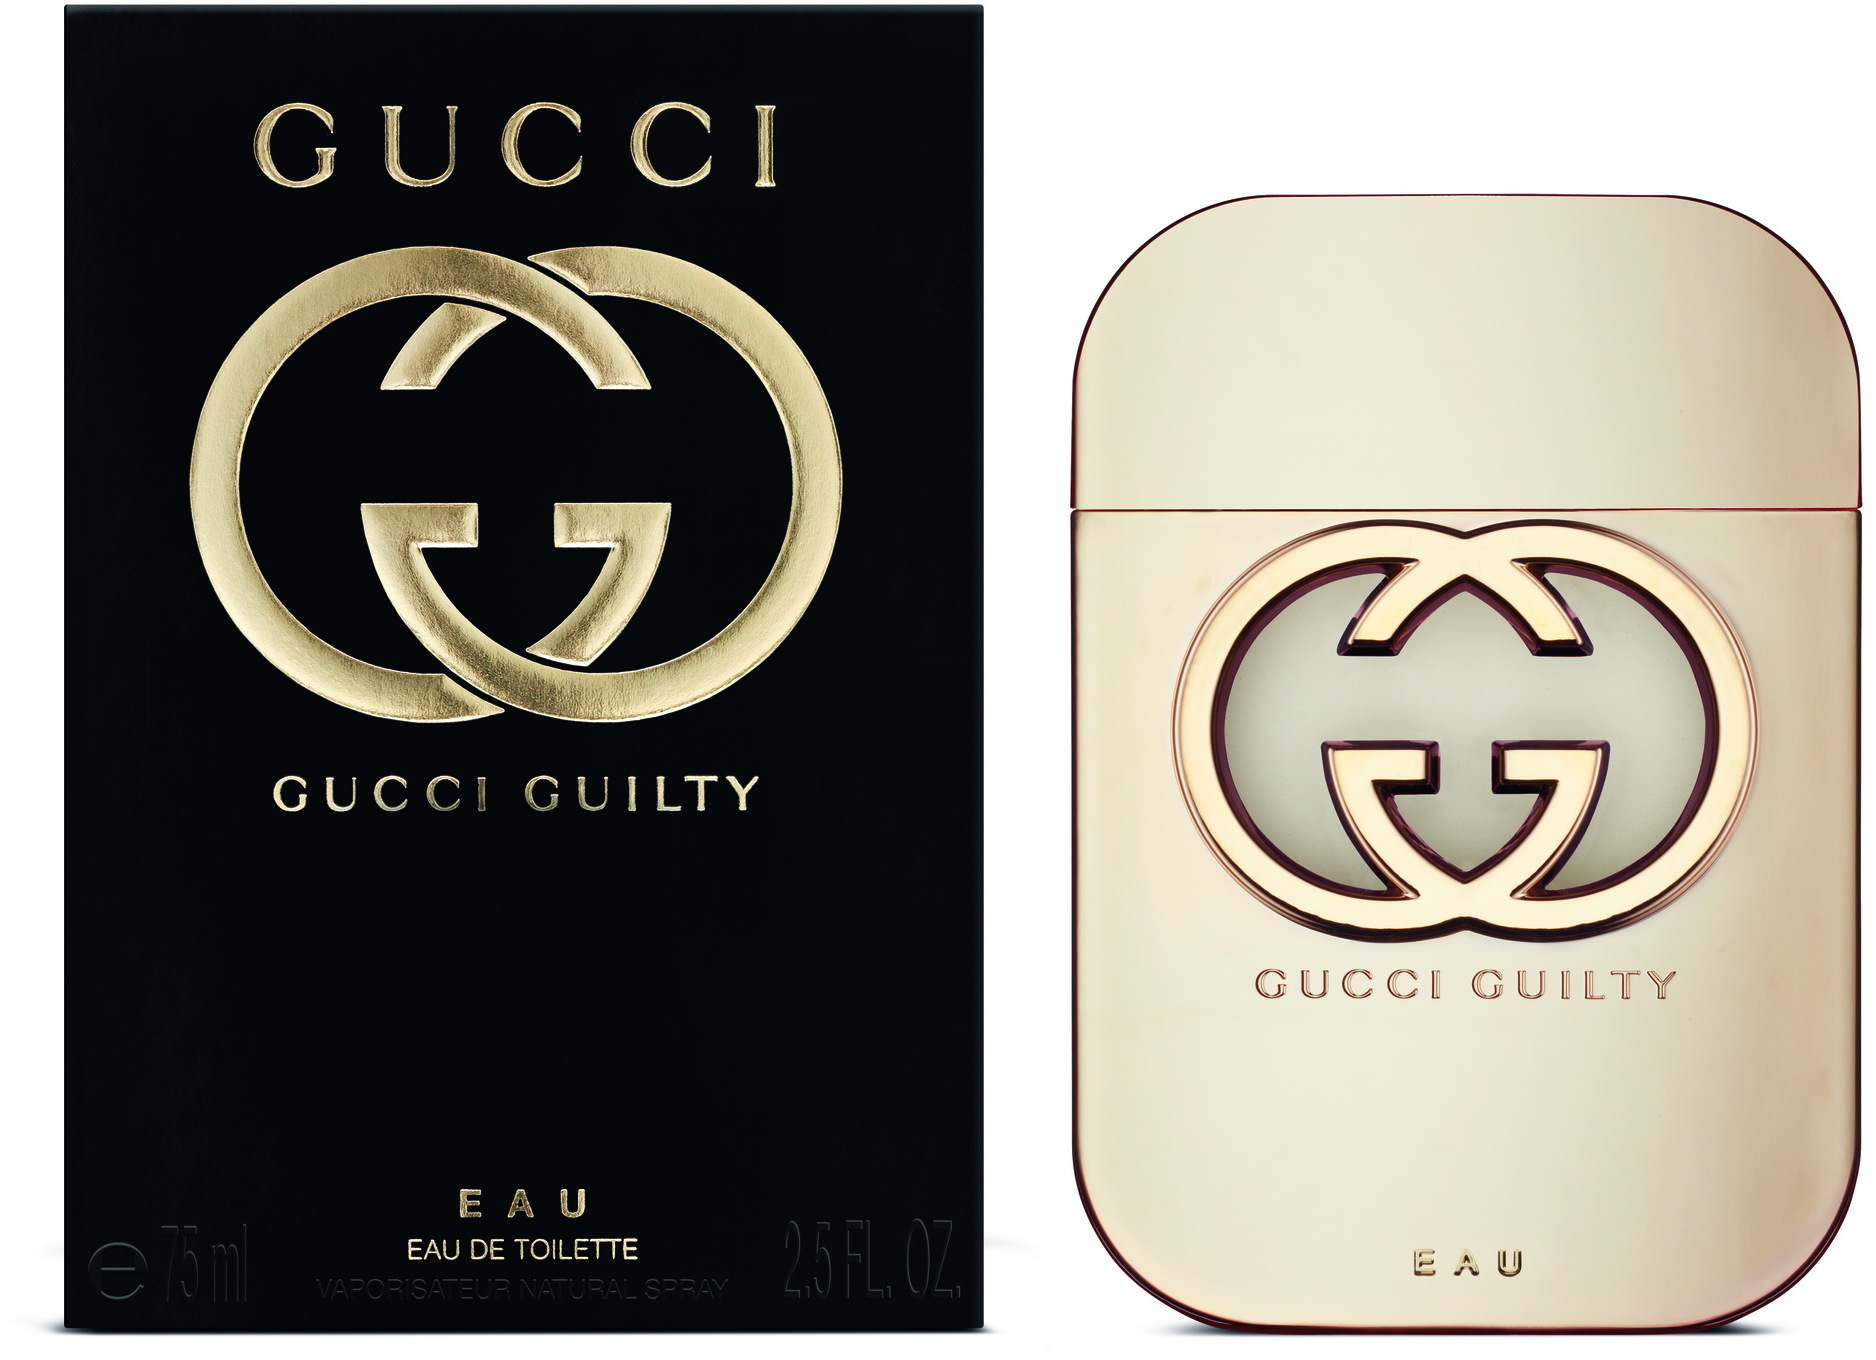 Gucci Guilty Eau EdT 75ml in duty-free 